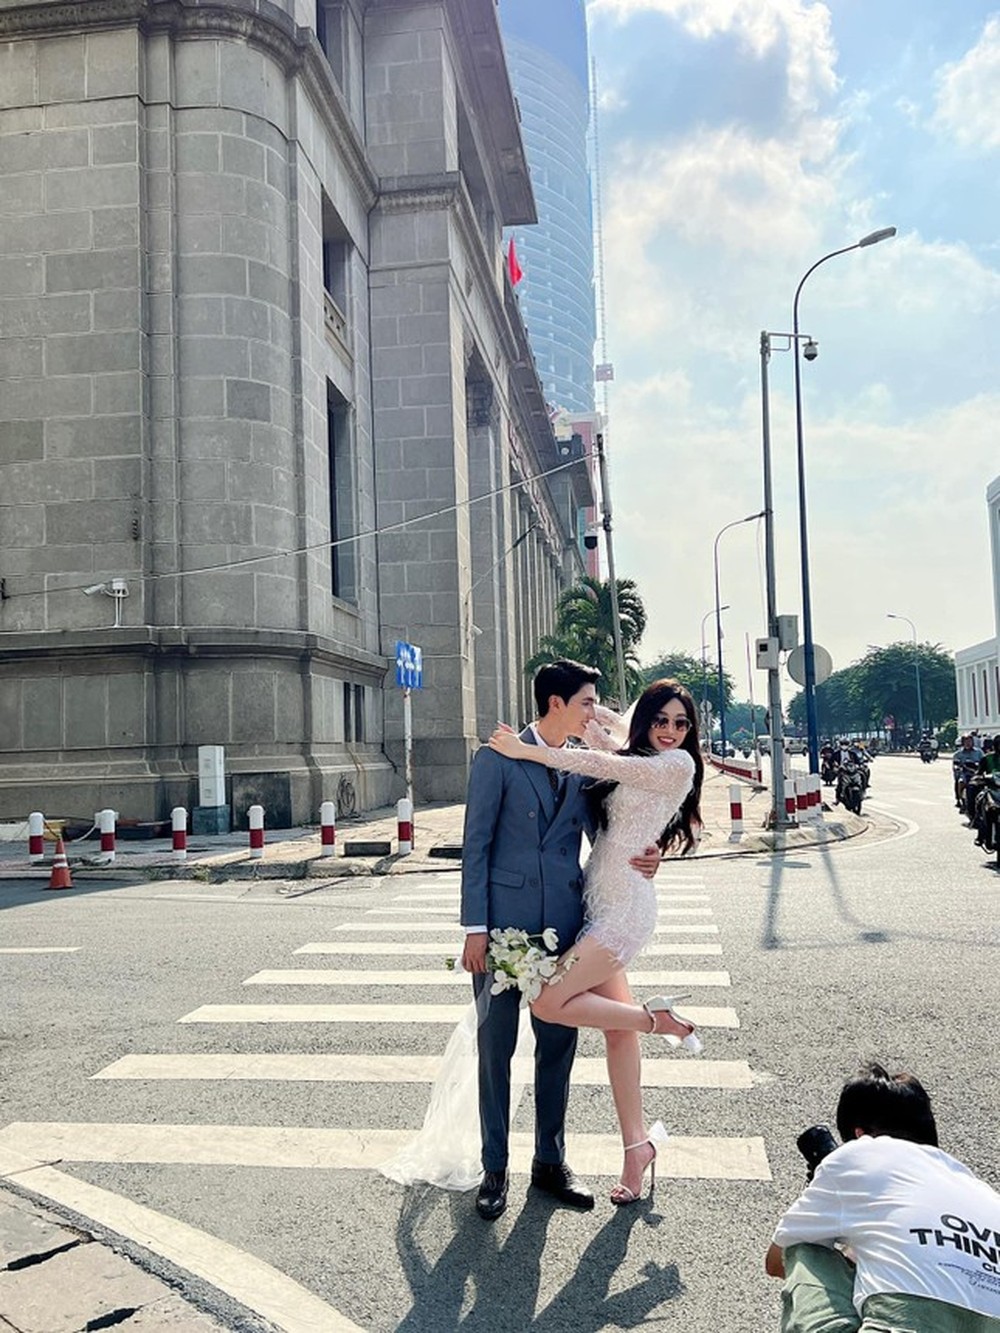 Hé lộ hậu trường chụp ảnh cưới của Á hậu Phương Nga và diễn viên Bình An khiến fan xôn xao - Ảnh 1.